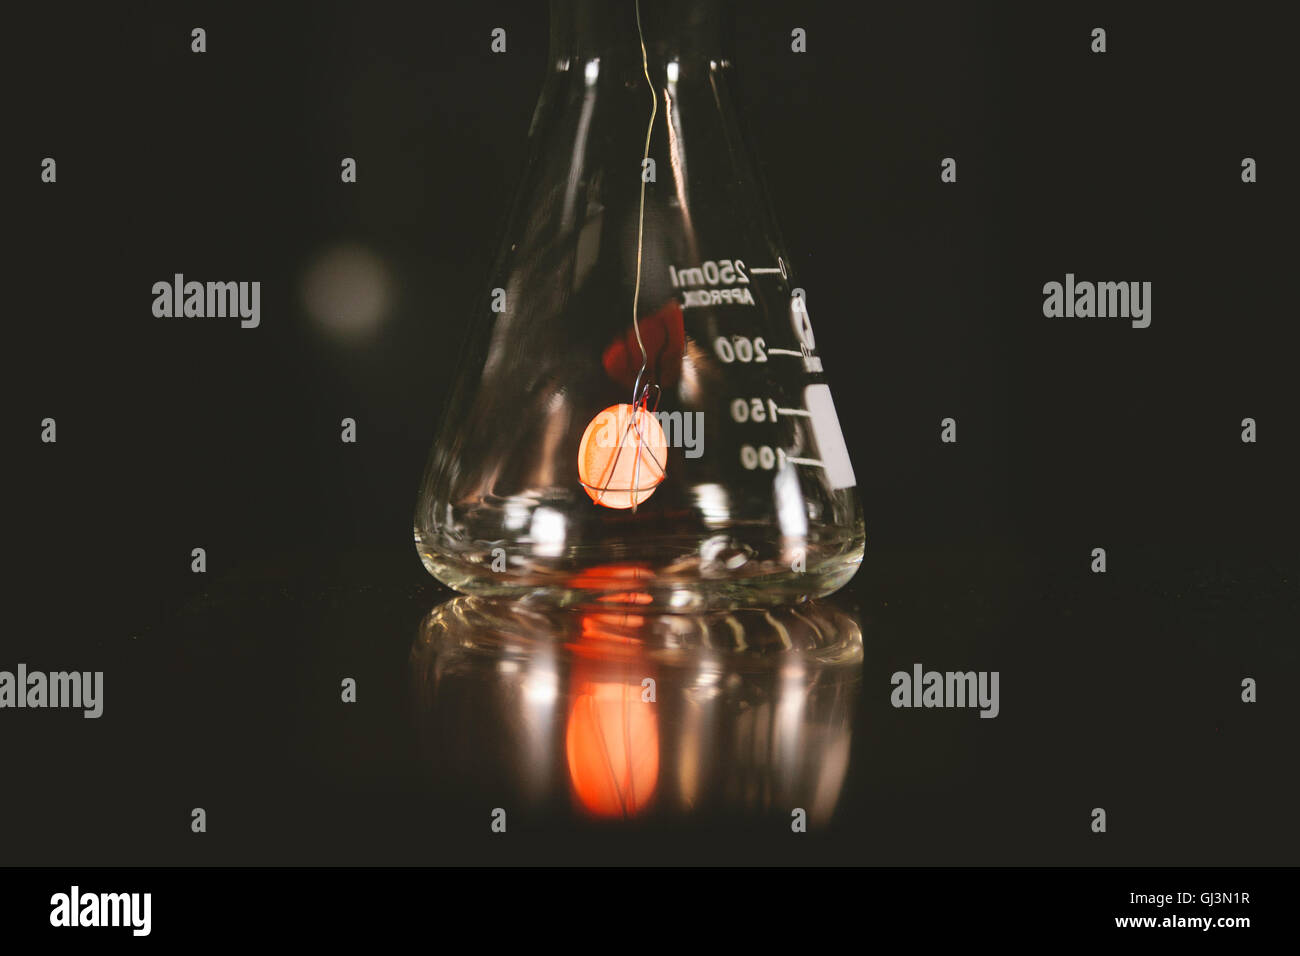 Acetone immagini e fotografie stock ad alta risoluzione - Alamy